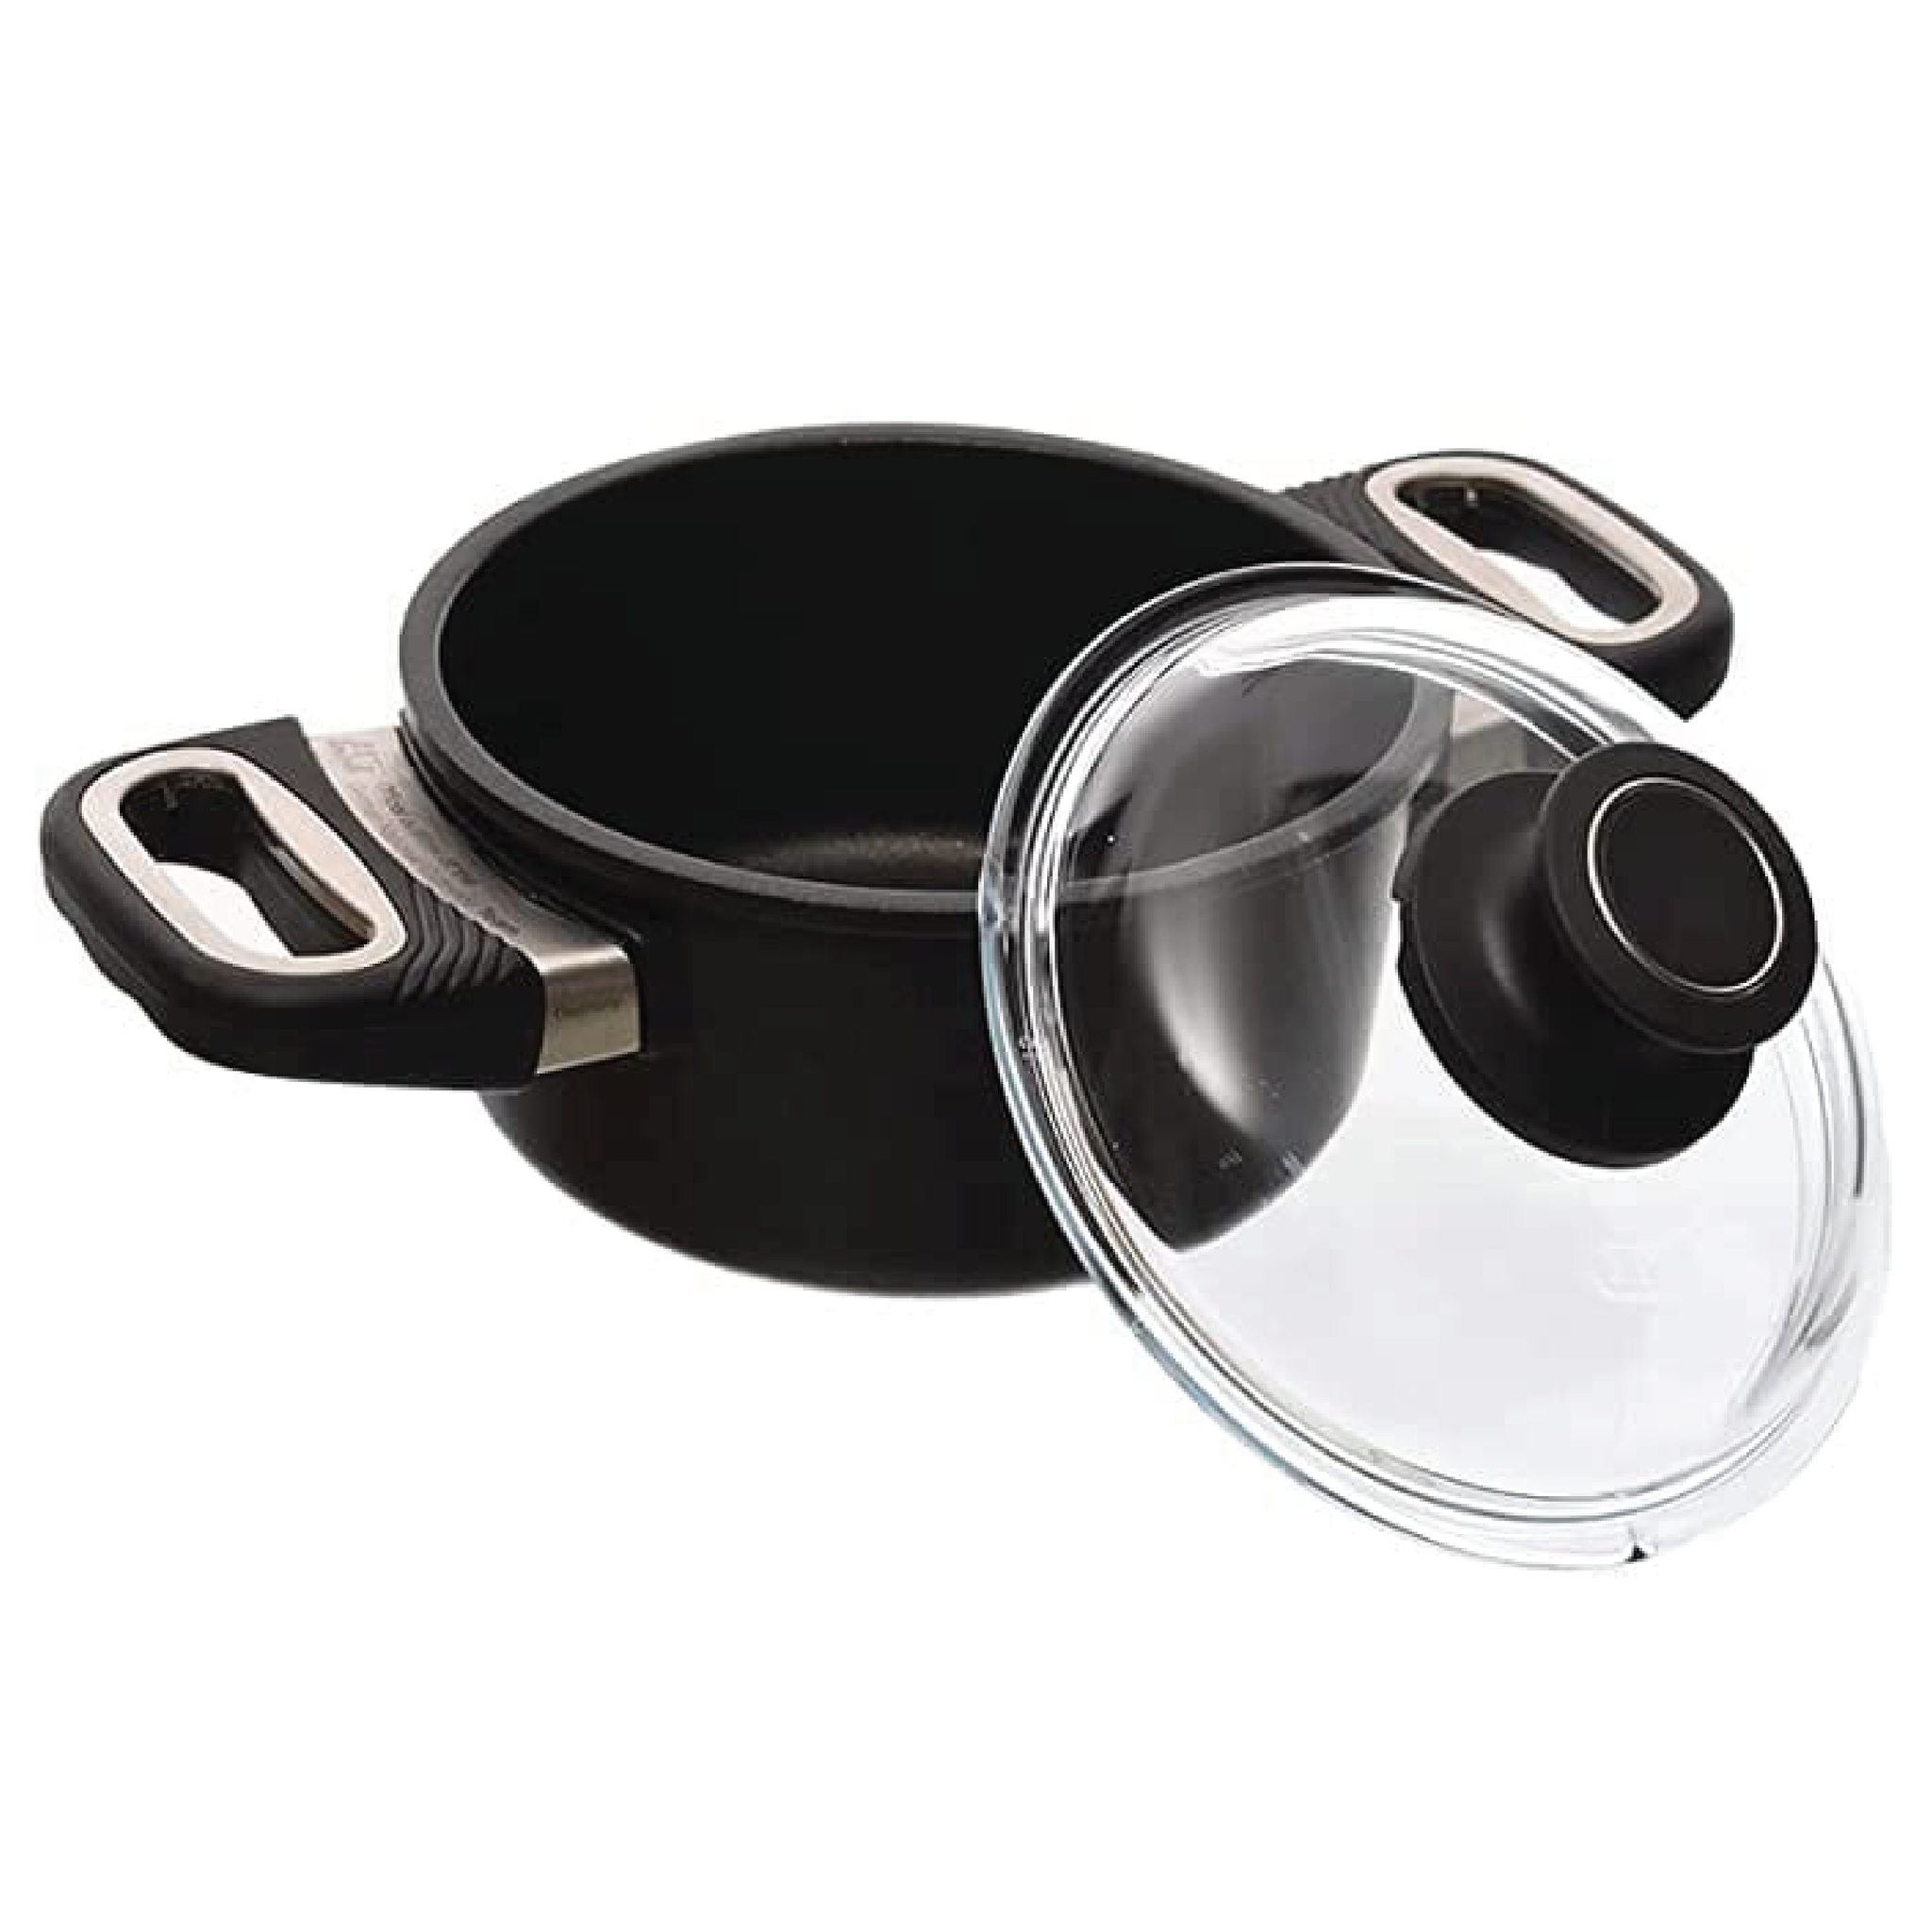 AMT - Black Pot with Glass Lid - Cast Aluminum - 16cm - 440004056